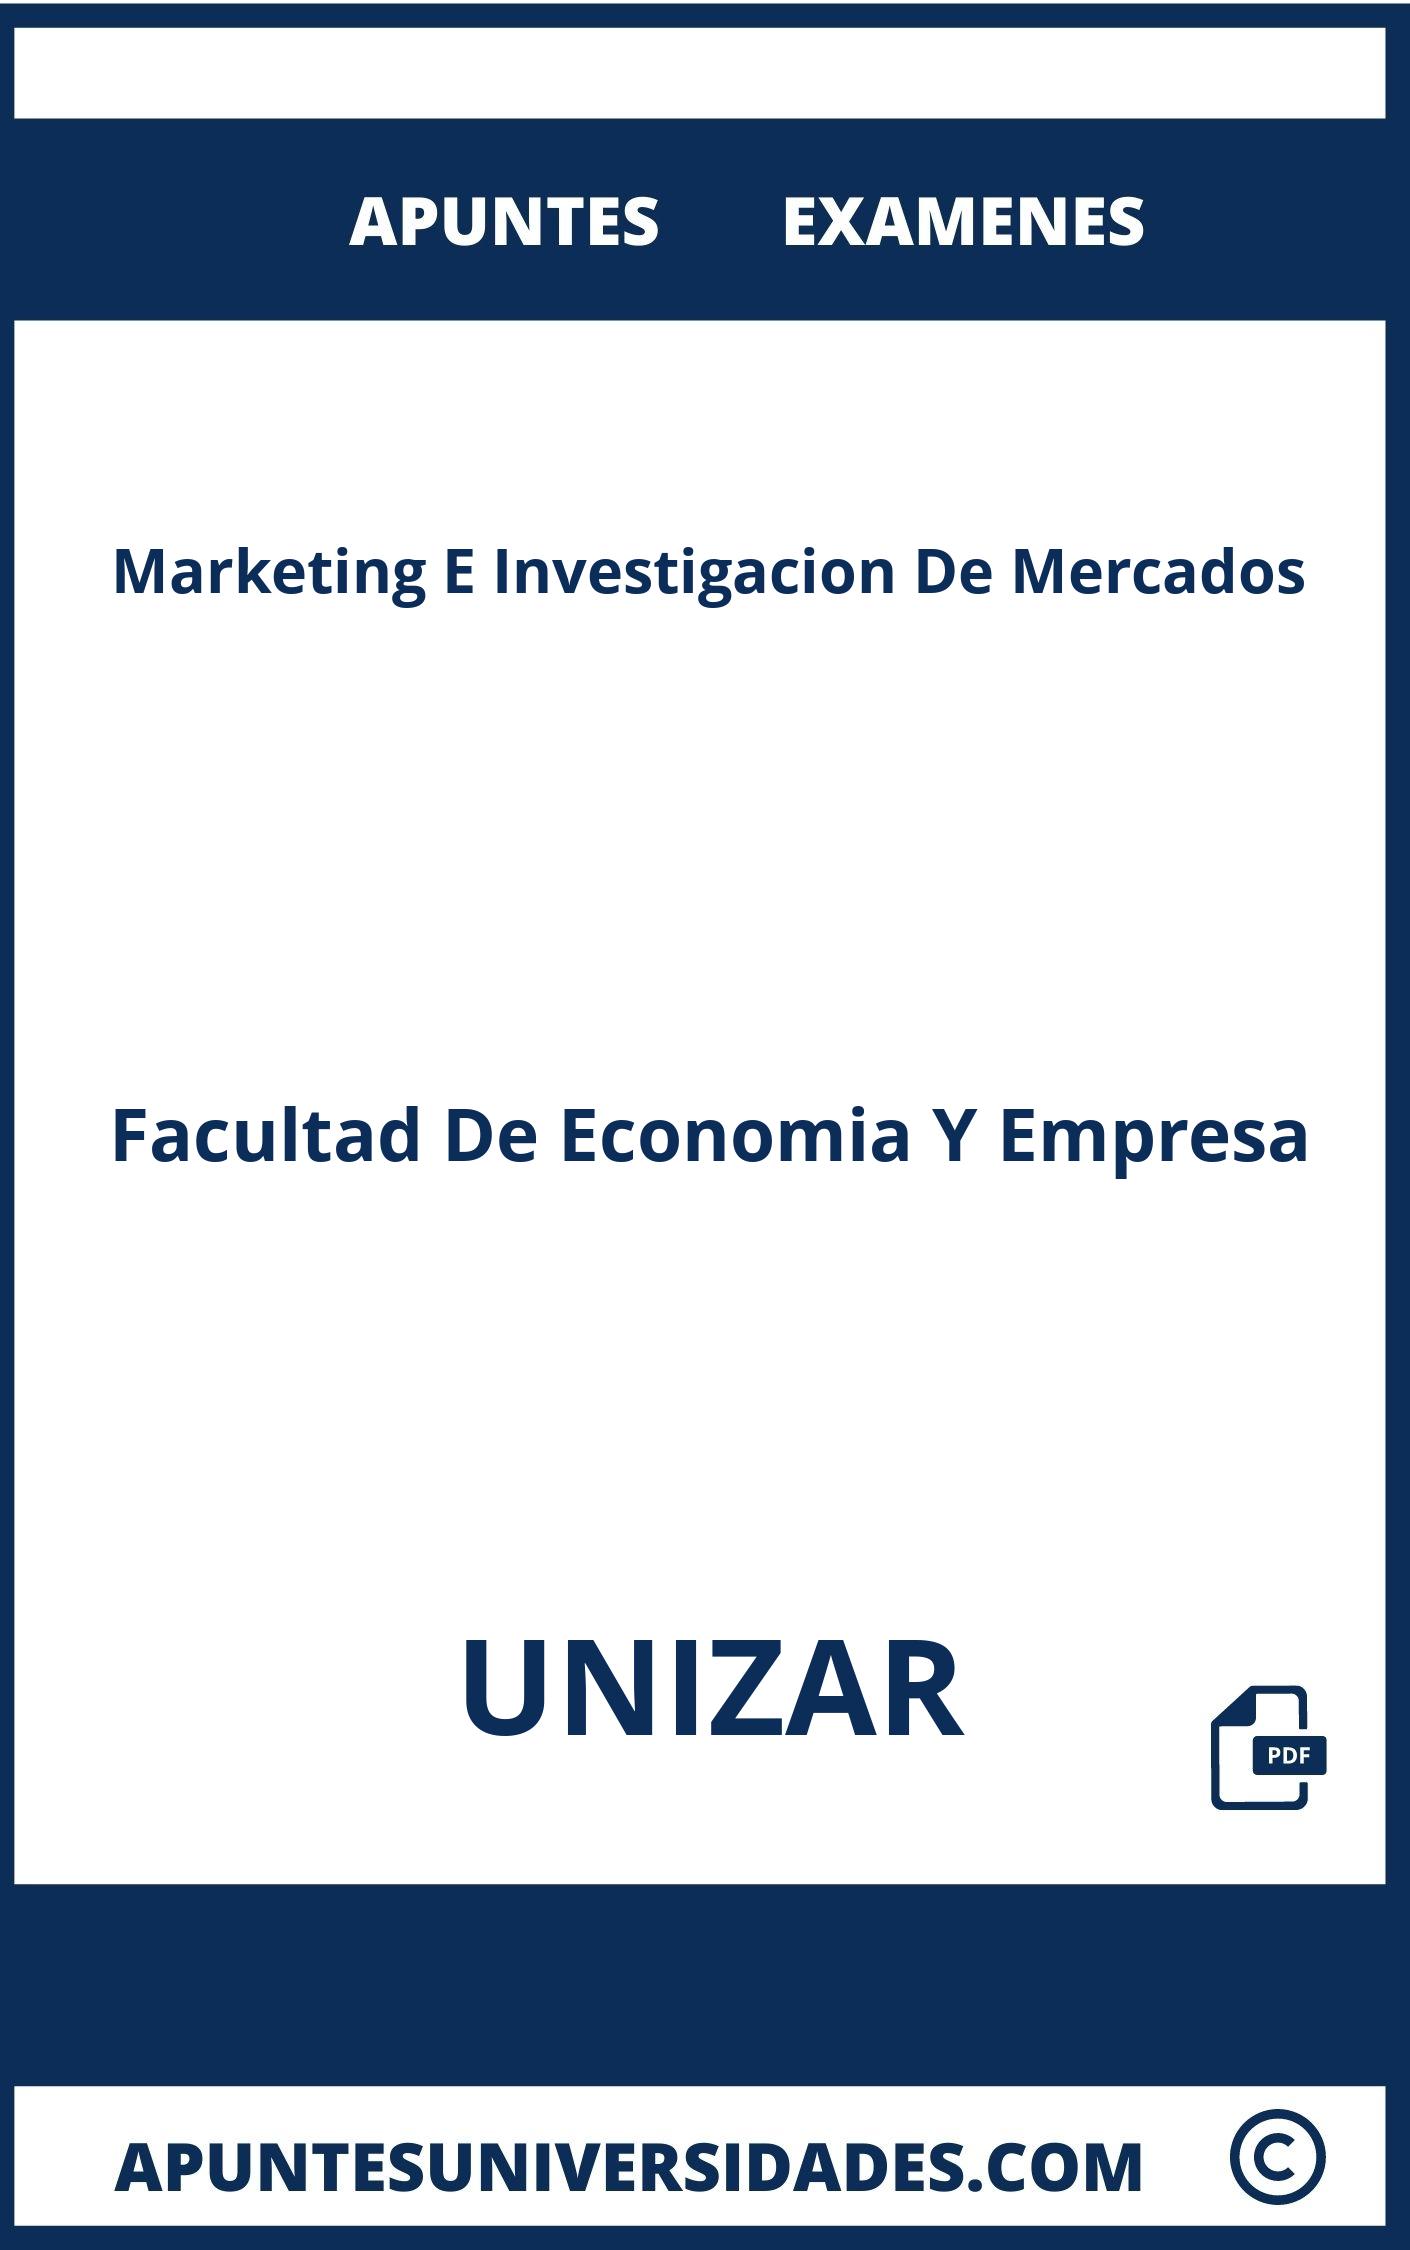 Examenes y Apuntes de Marketing E Investigacion De Mercados UNIZAR